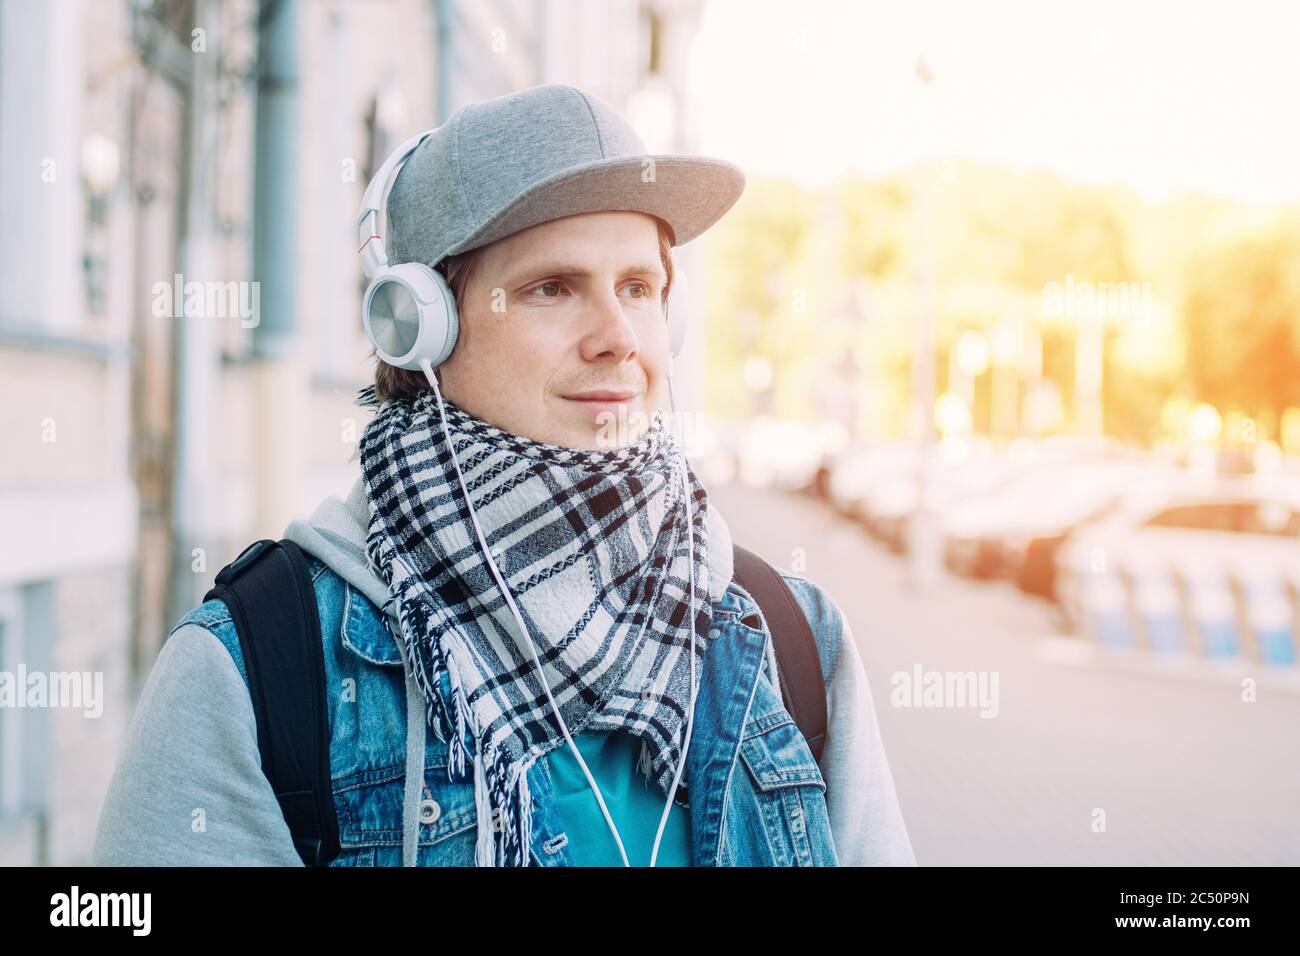 Un homme de race blanche, dans une casquette grise, écoute de la musique sur un casque. Banque D'Images